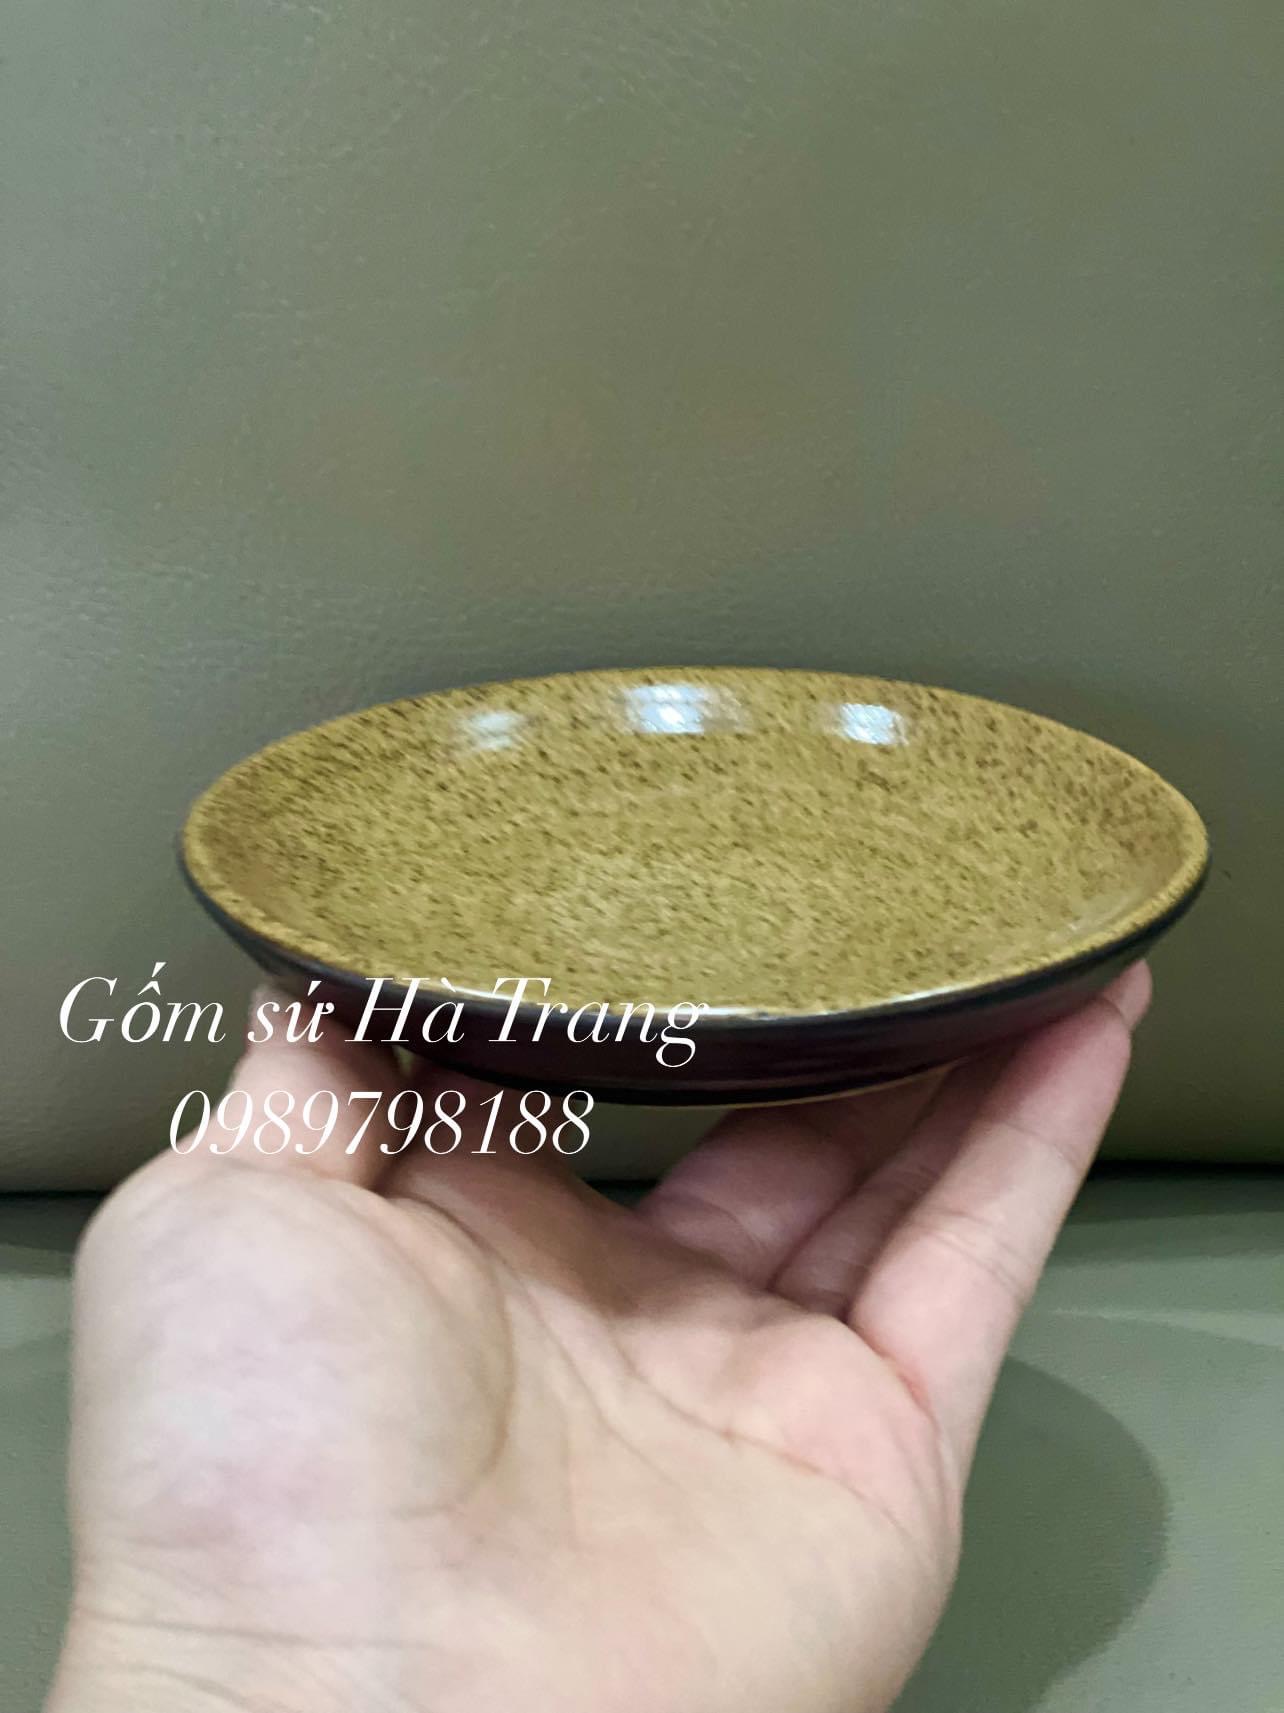 Bộ cốc đĩa gốm sứ Bát Tràng cao cấp dung tích 250ml